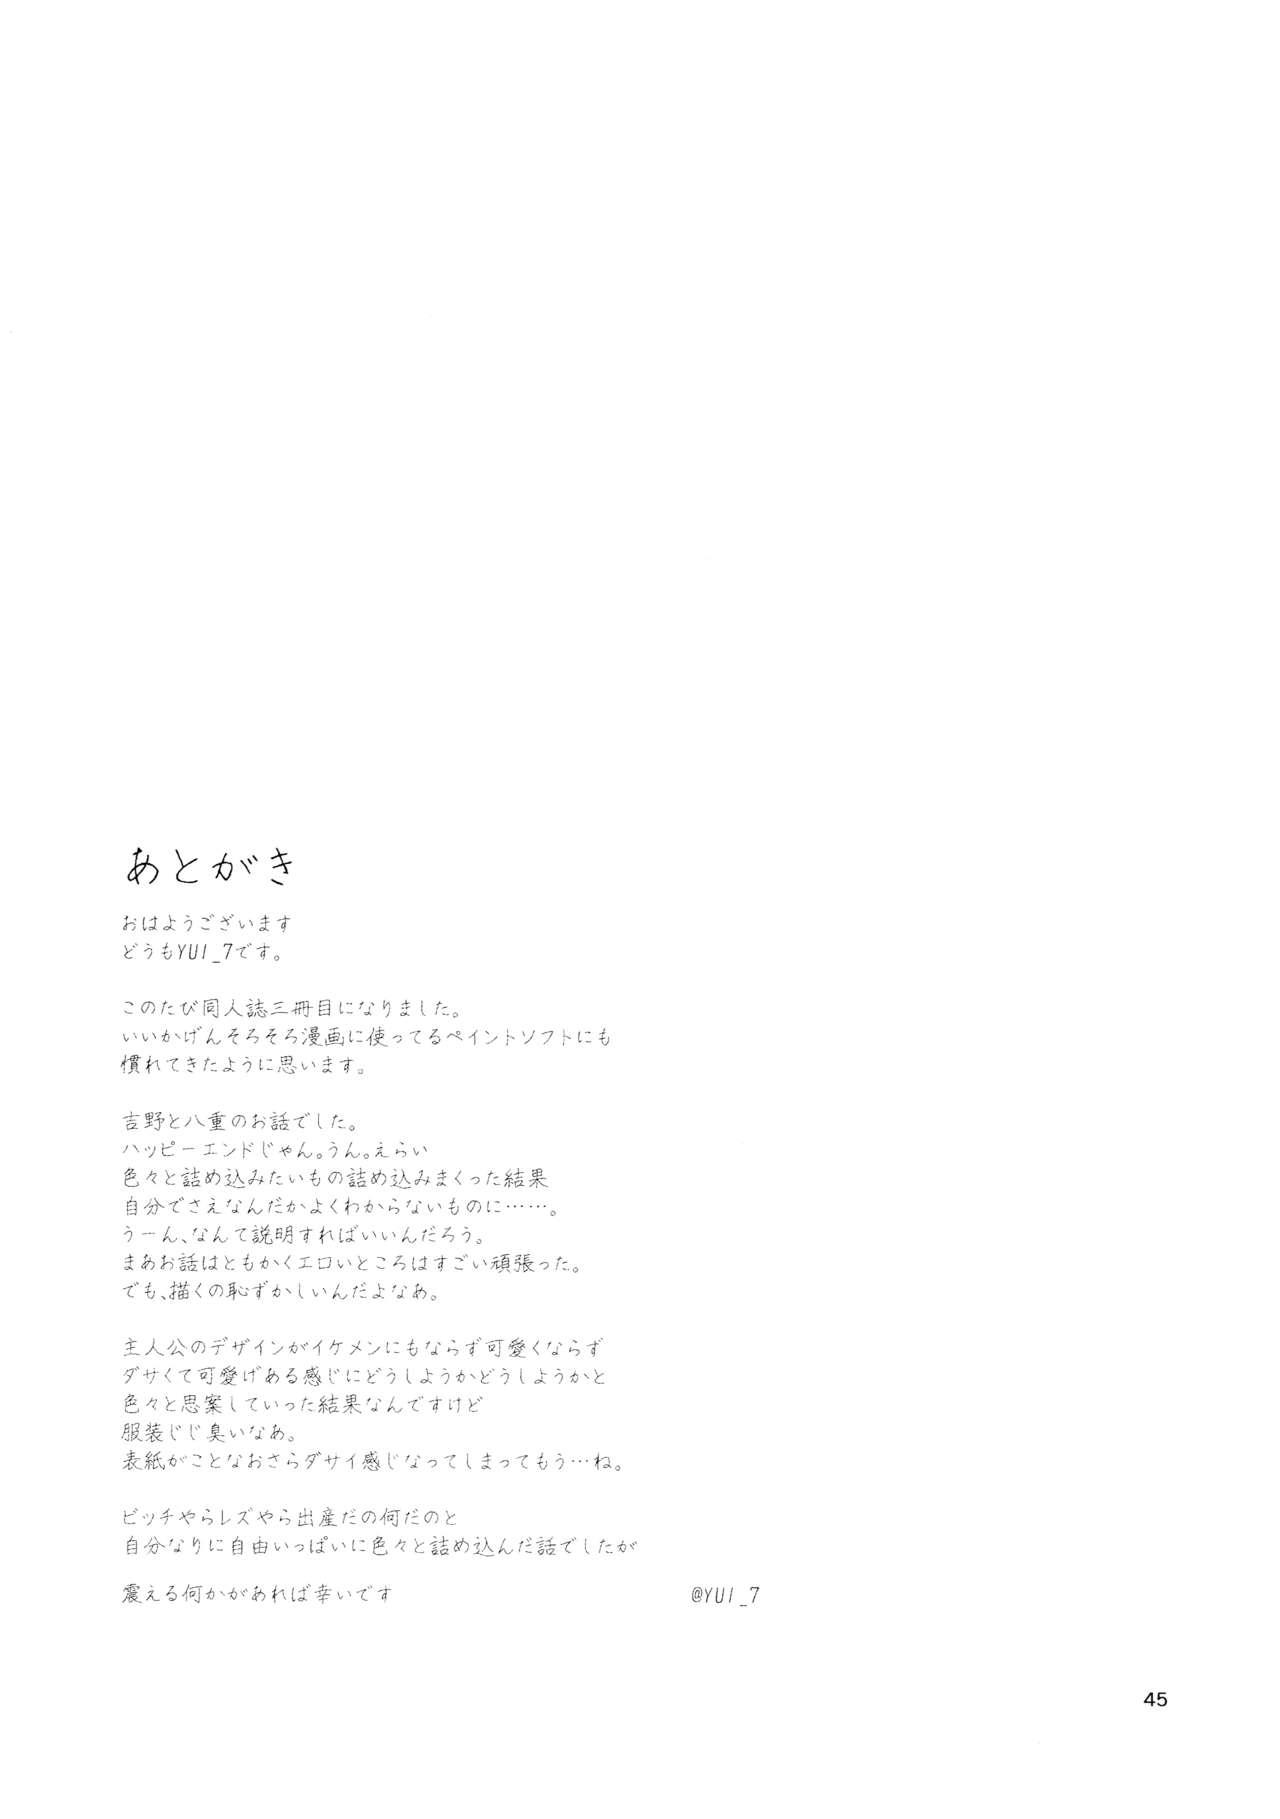 Livecam Harugasumi - Kimi to Tomo ni Ayumu Michi Verga - Page 45